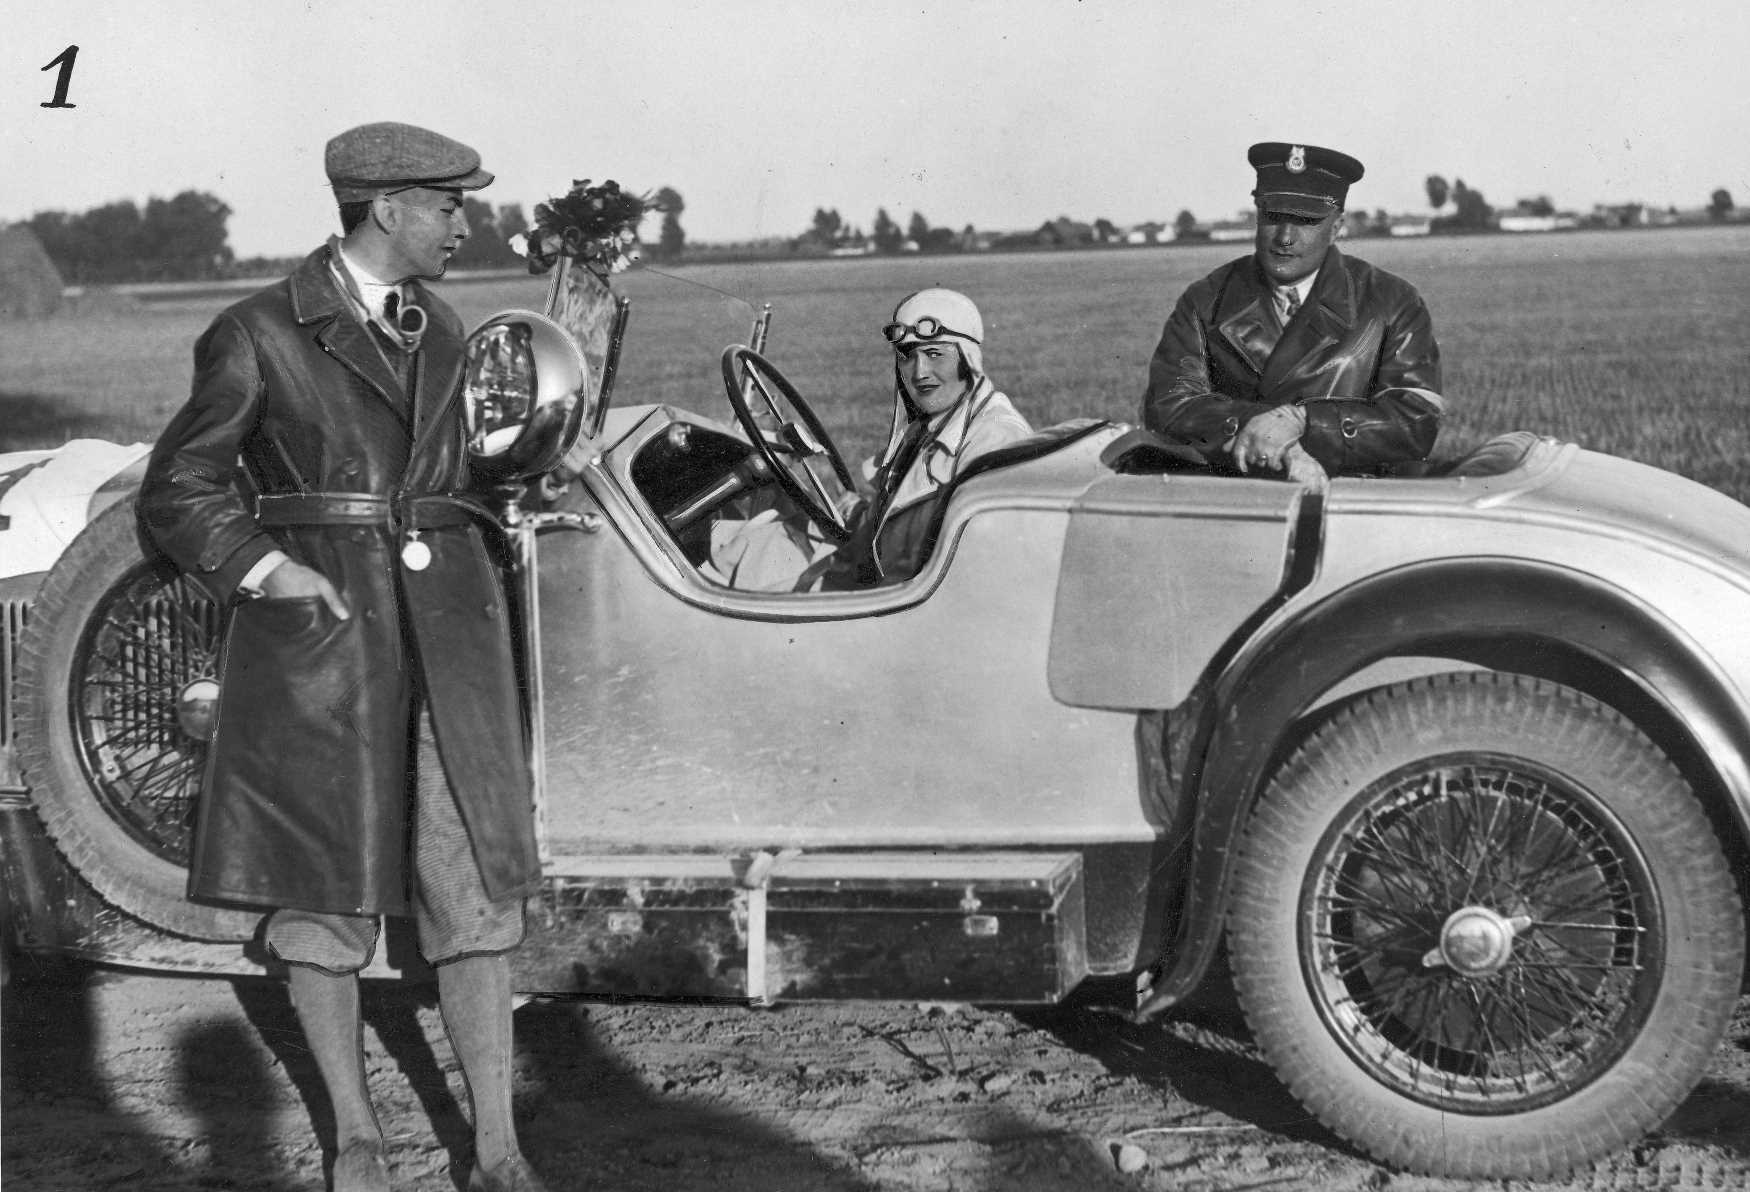 Przedwojenne zdjęcie. Kobieta siedzi w sportowym kabriolecie. Po obu stronach samochodu stoją mężczyźni w skórzanych płaszczach z kołnierzami. W tle, za samochodem, znajduje się pole.